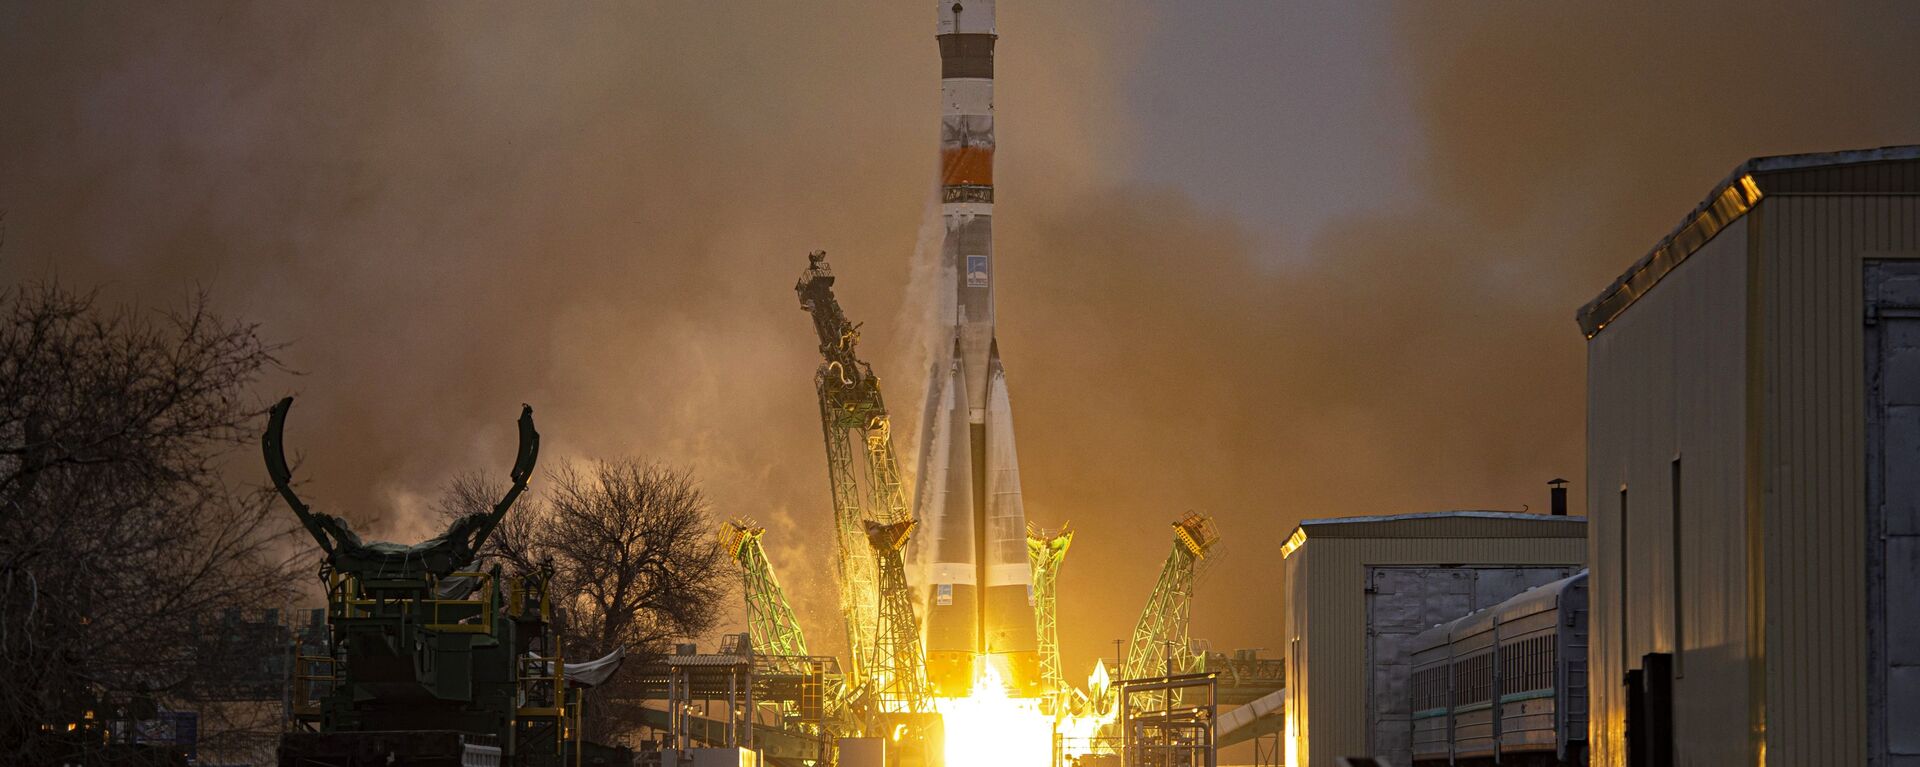 Lançamento do foguete Soyuz-2.1a (foto de arquivo) - Sputnik Brasil, 1920, 22.03.2021